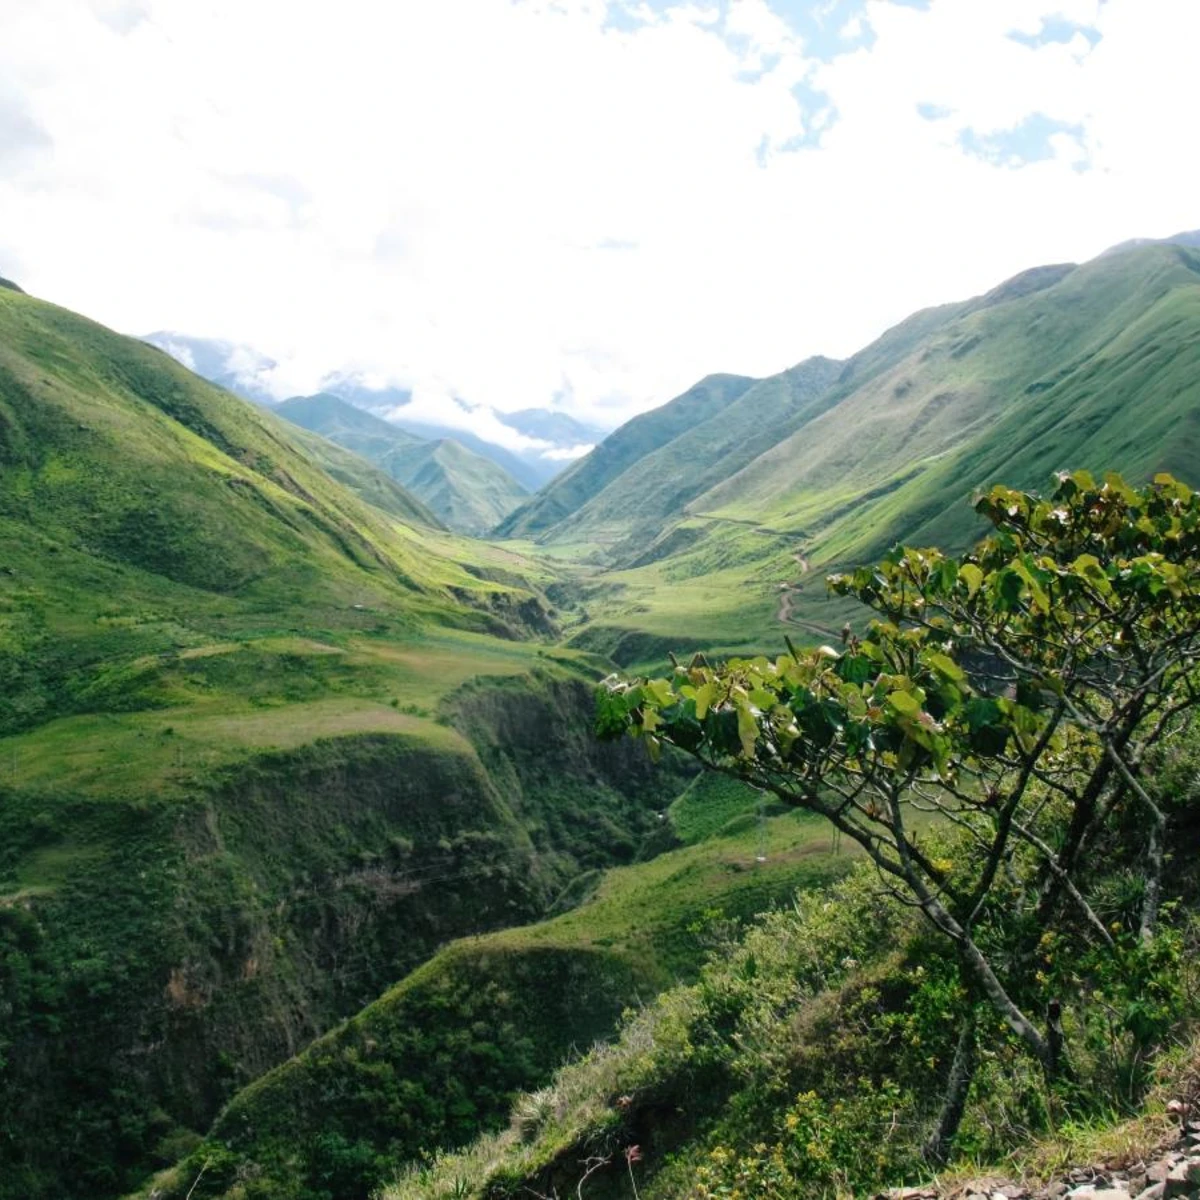 Green valleys and mountains in Ecuador. 